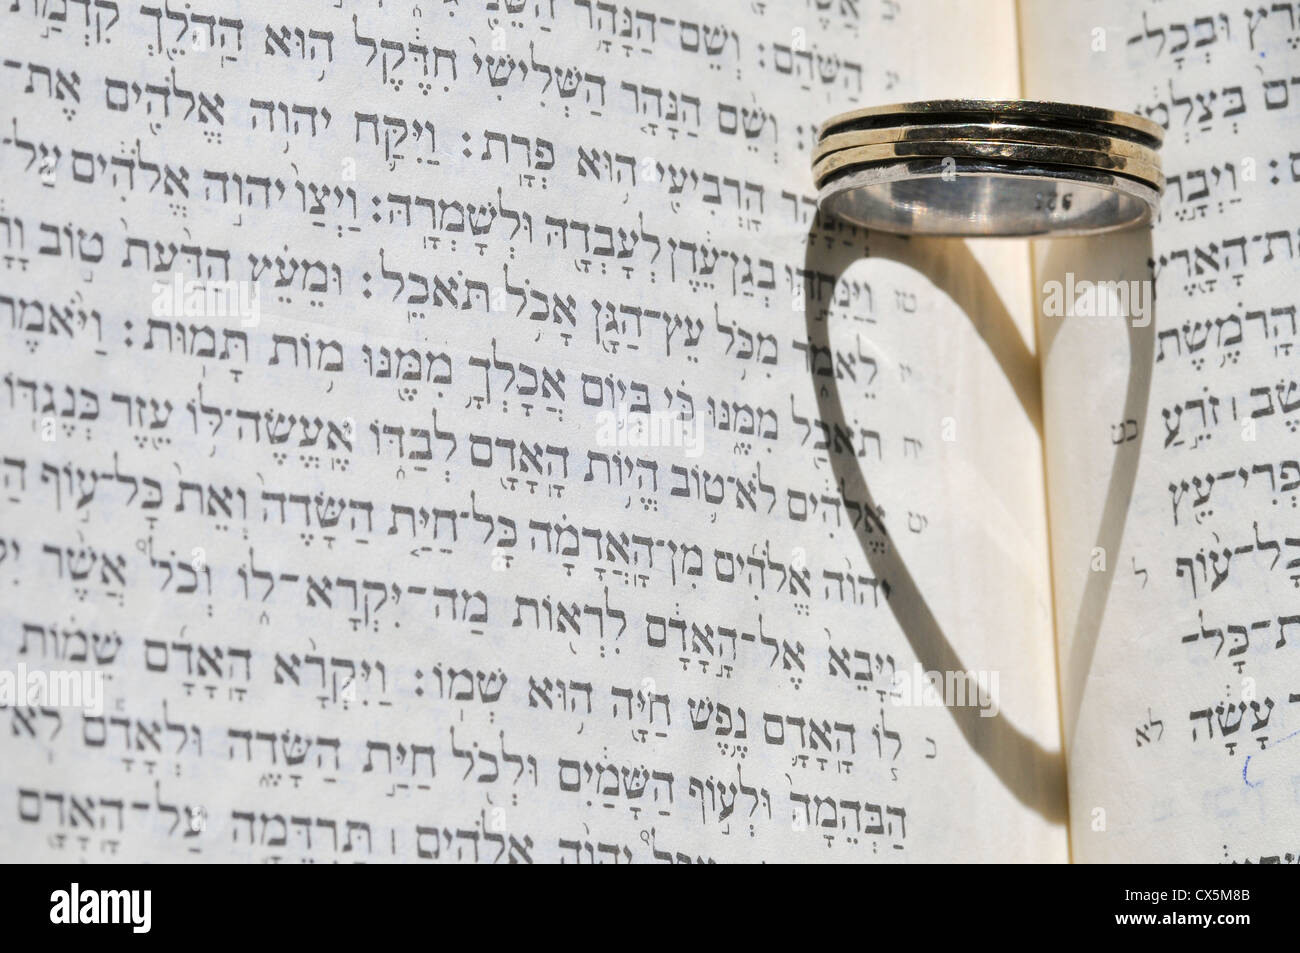 Ebraico il concetto di matrimonio anello di nozze sul testo ebraico (Ketubah) Foto Stock